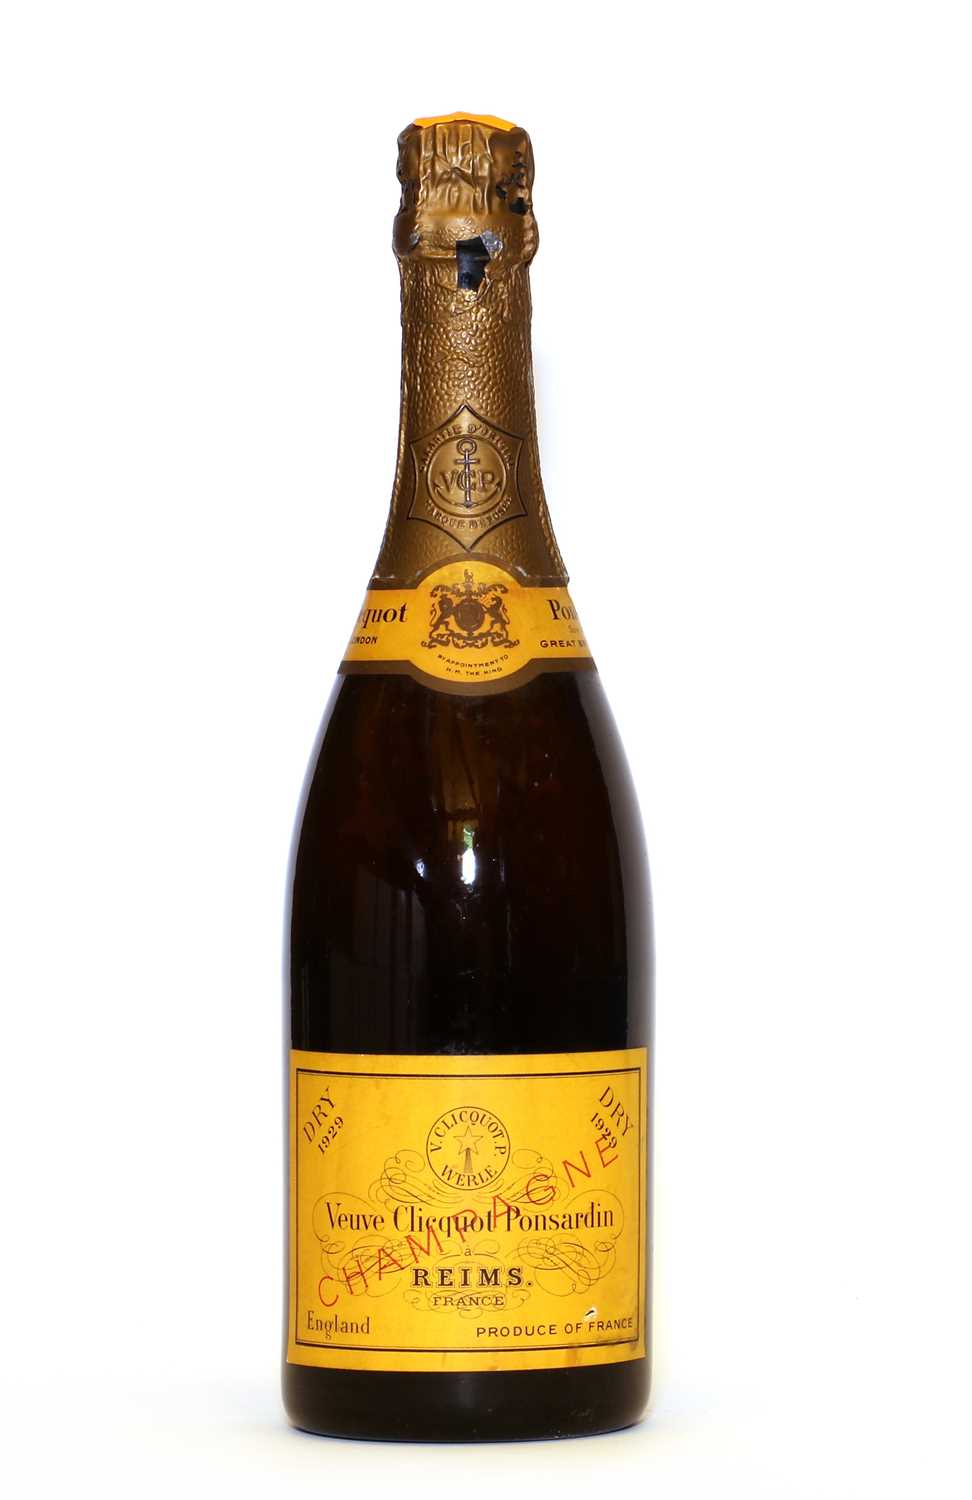 Lot 3 - Veuve Clicquot Ponsardin, Reims, 1929, one bottle